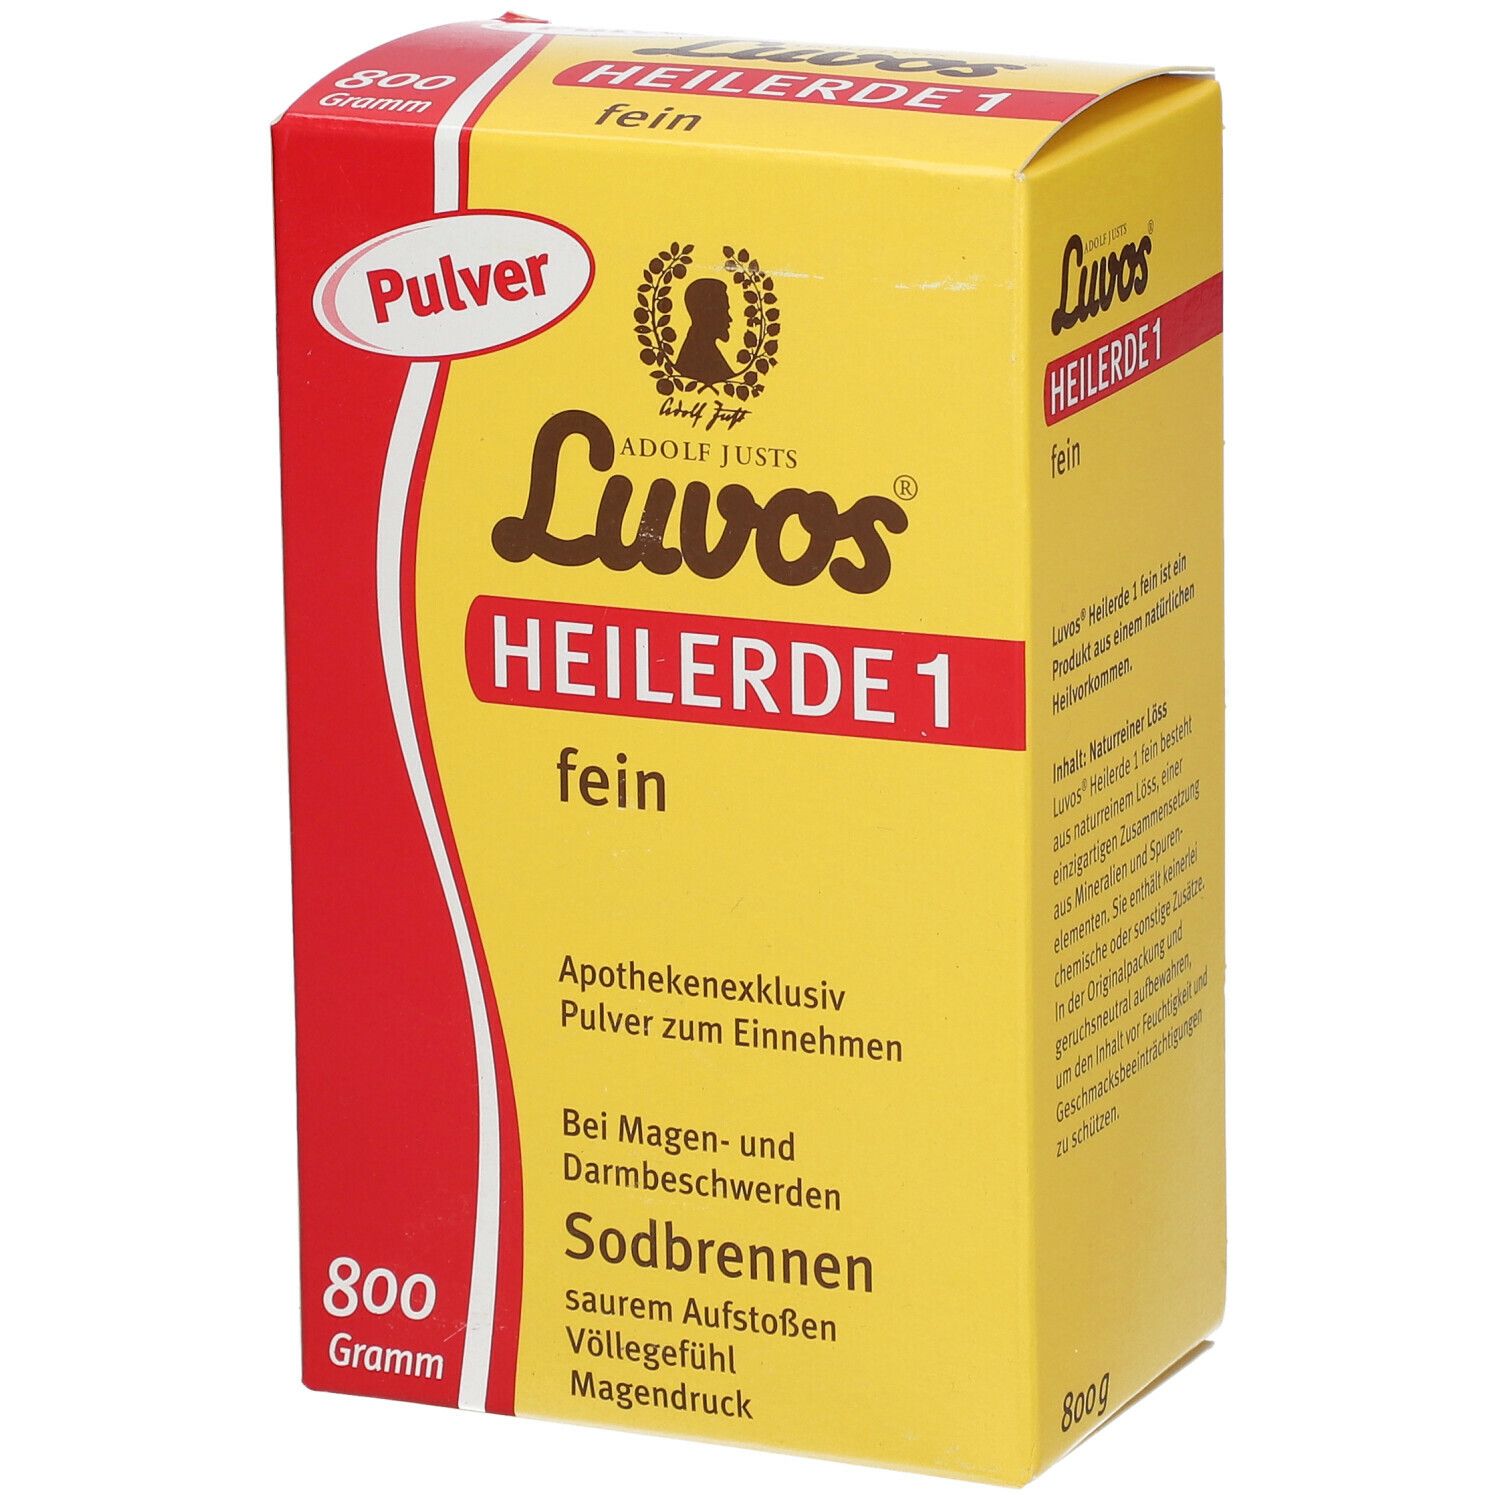 Luvos® Heilerde 1 fein